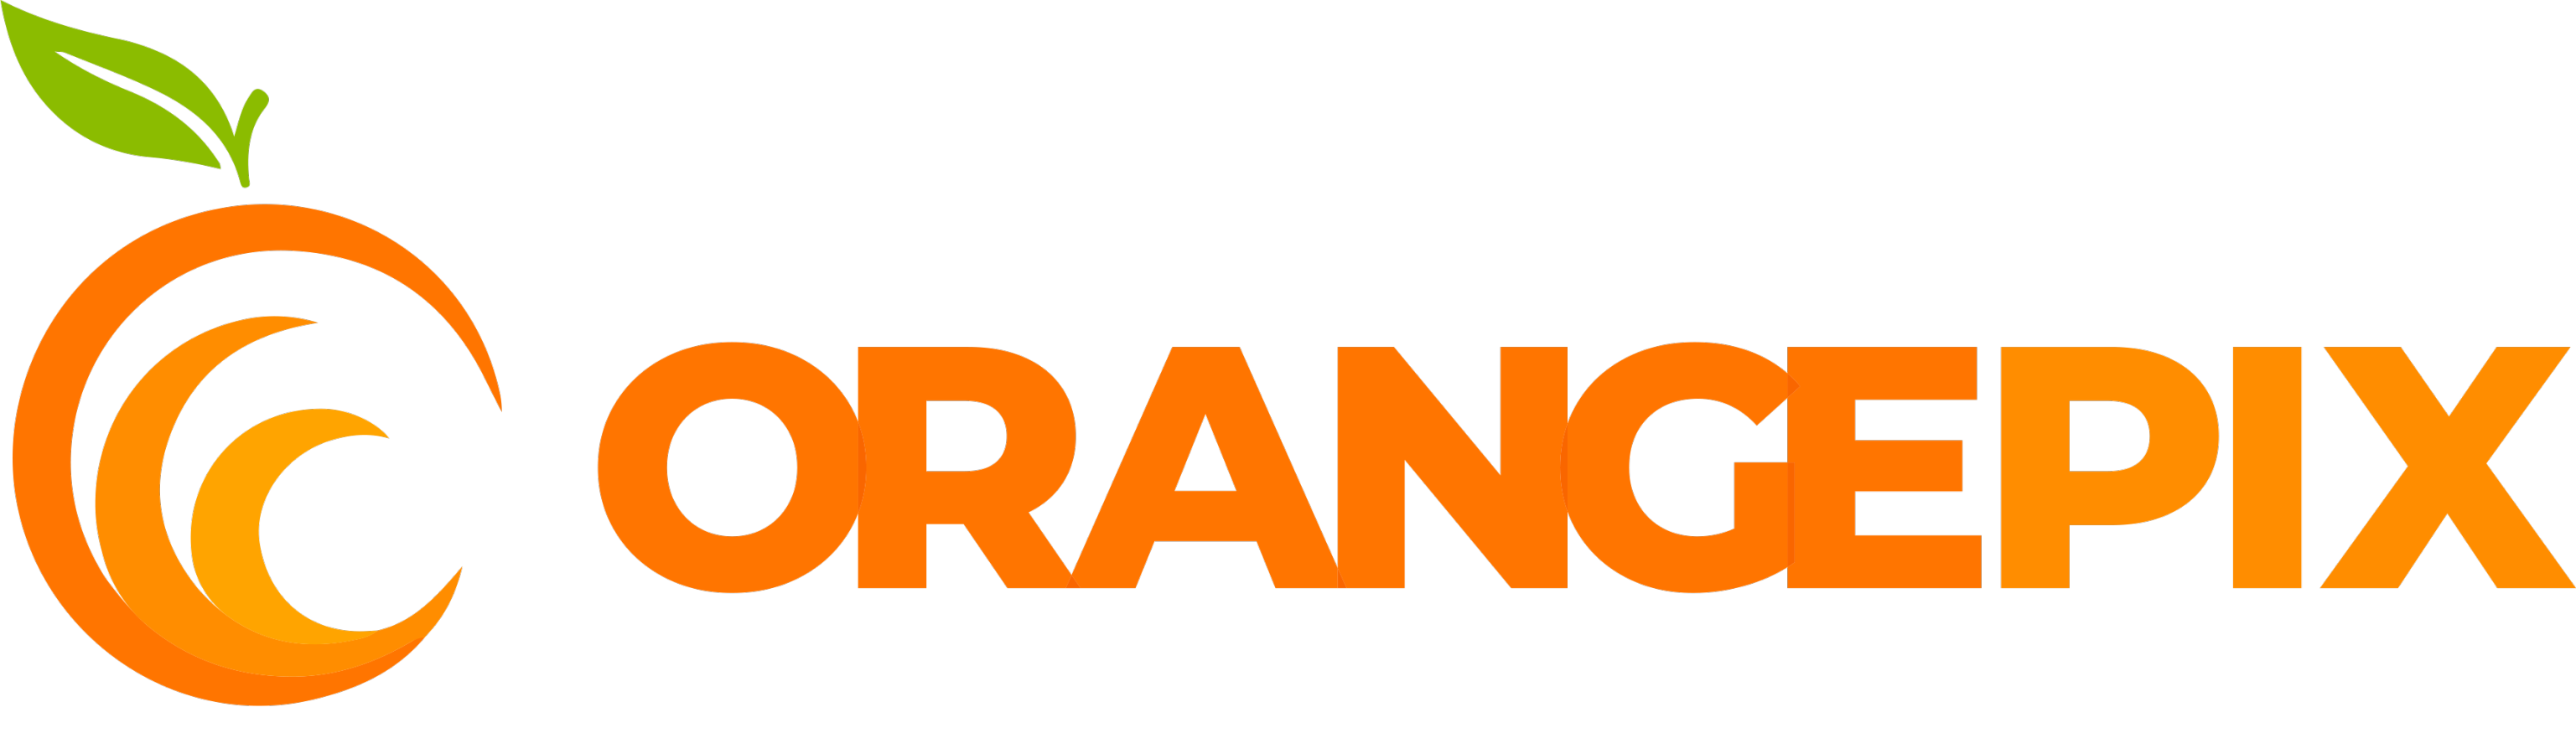 Orangepix - Web Agency